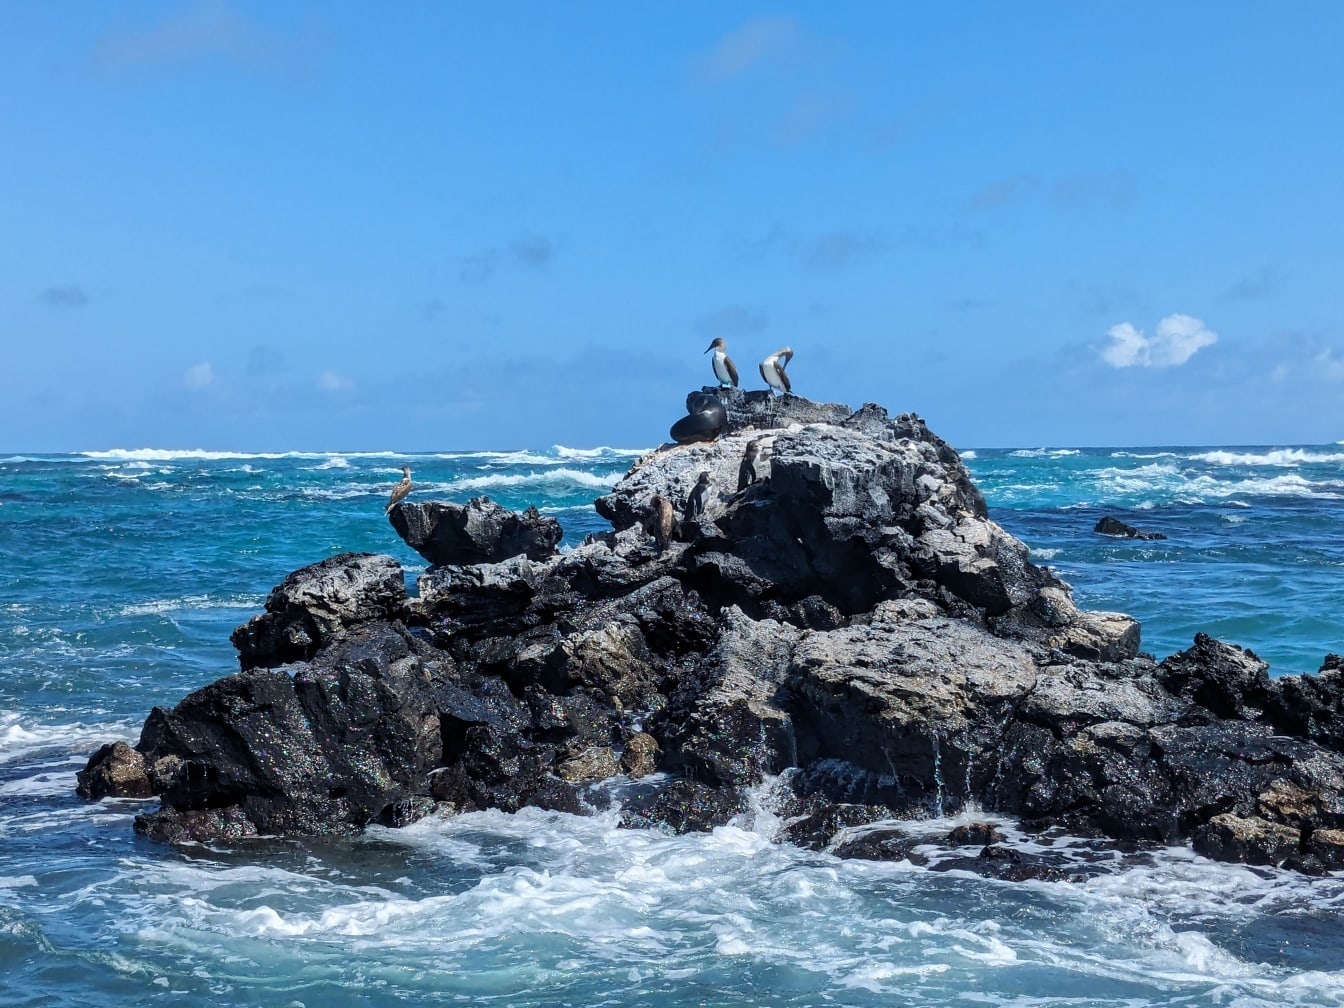 Sinijalkaiset poikalinnut (Sula nebouxii) merilintuja kallioisella subtrooppisella saarella Tyynellämerellä